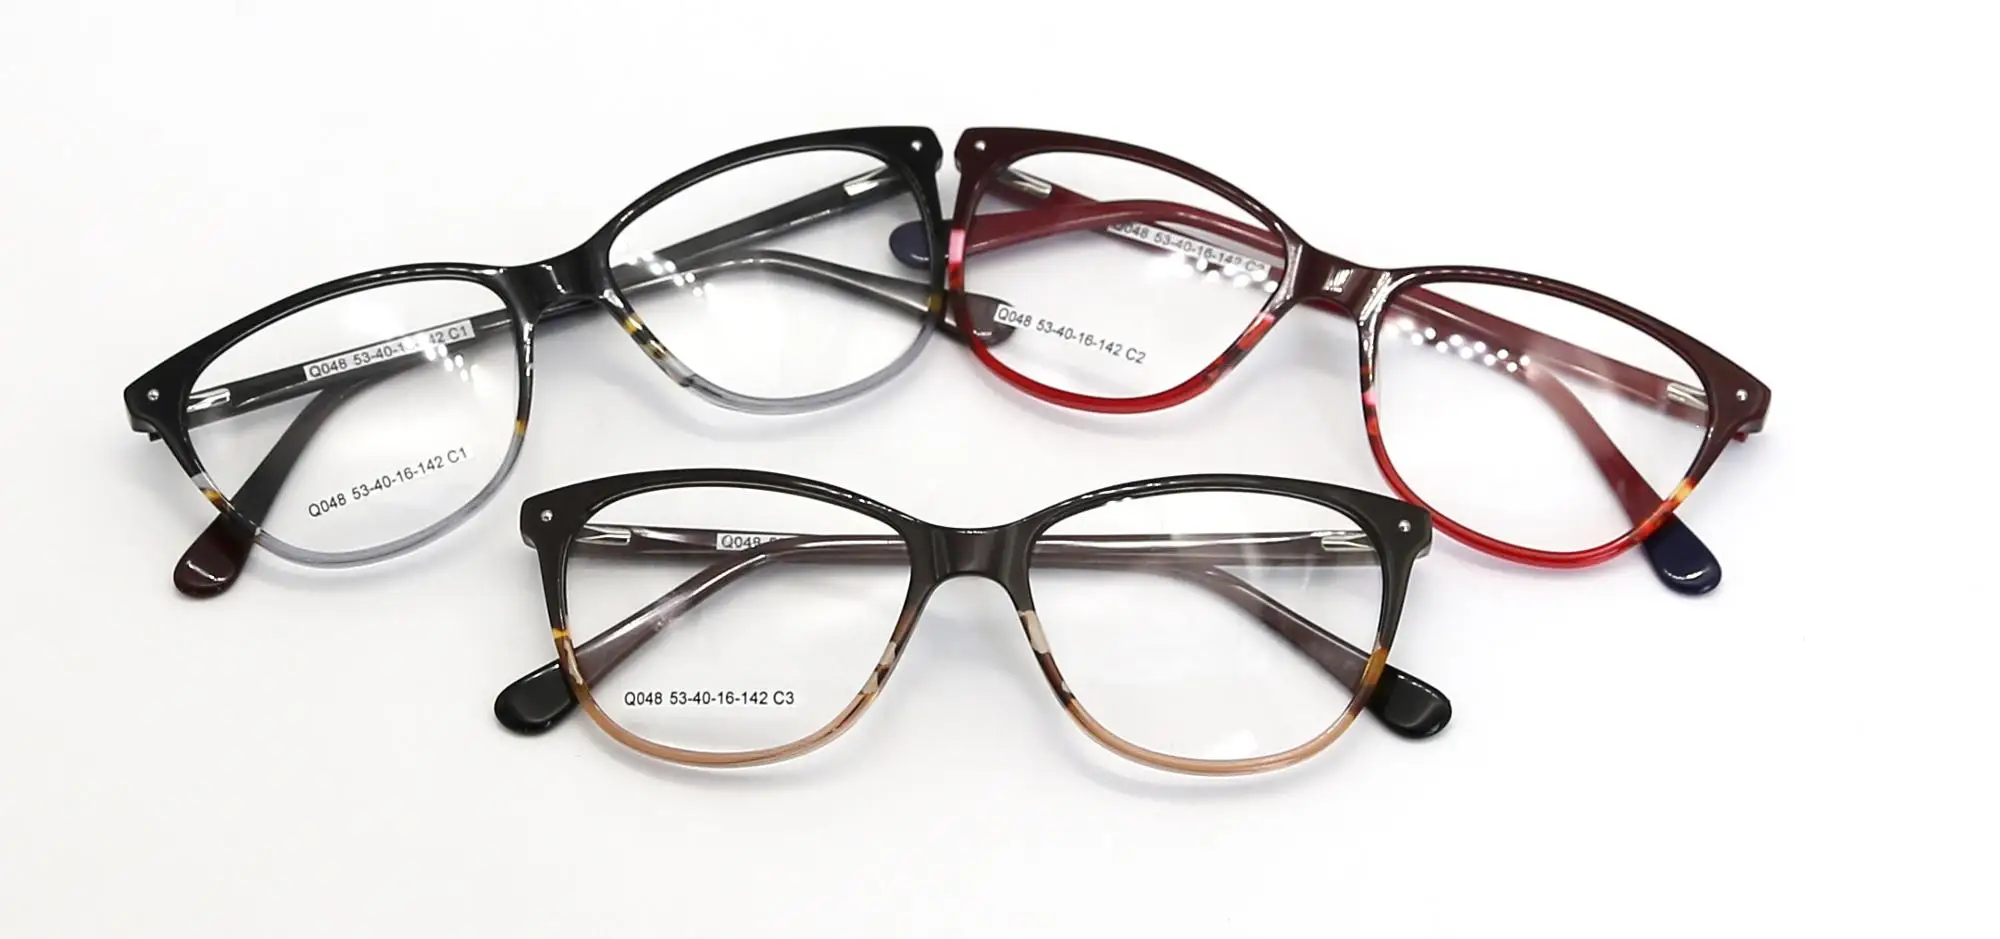 2019 Women Eyeglasses Frame Laminated Acetate Frame Glasses - Buy ...